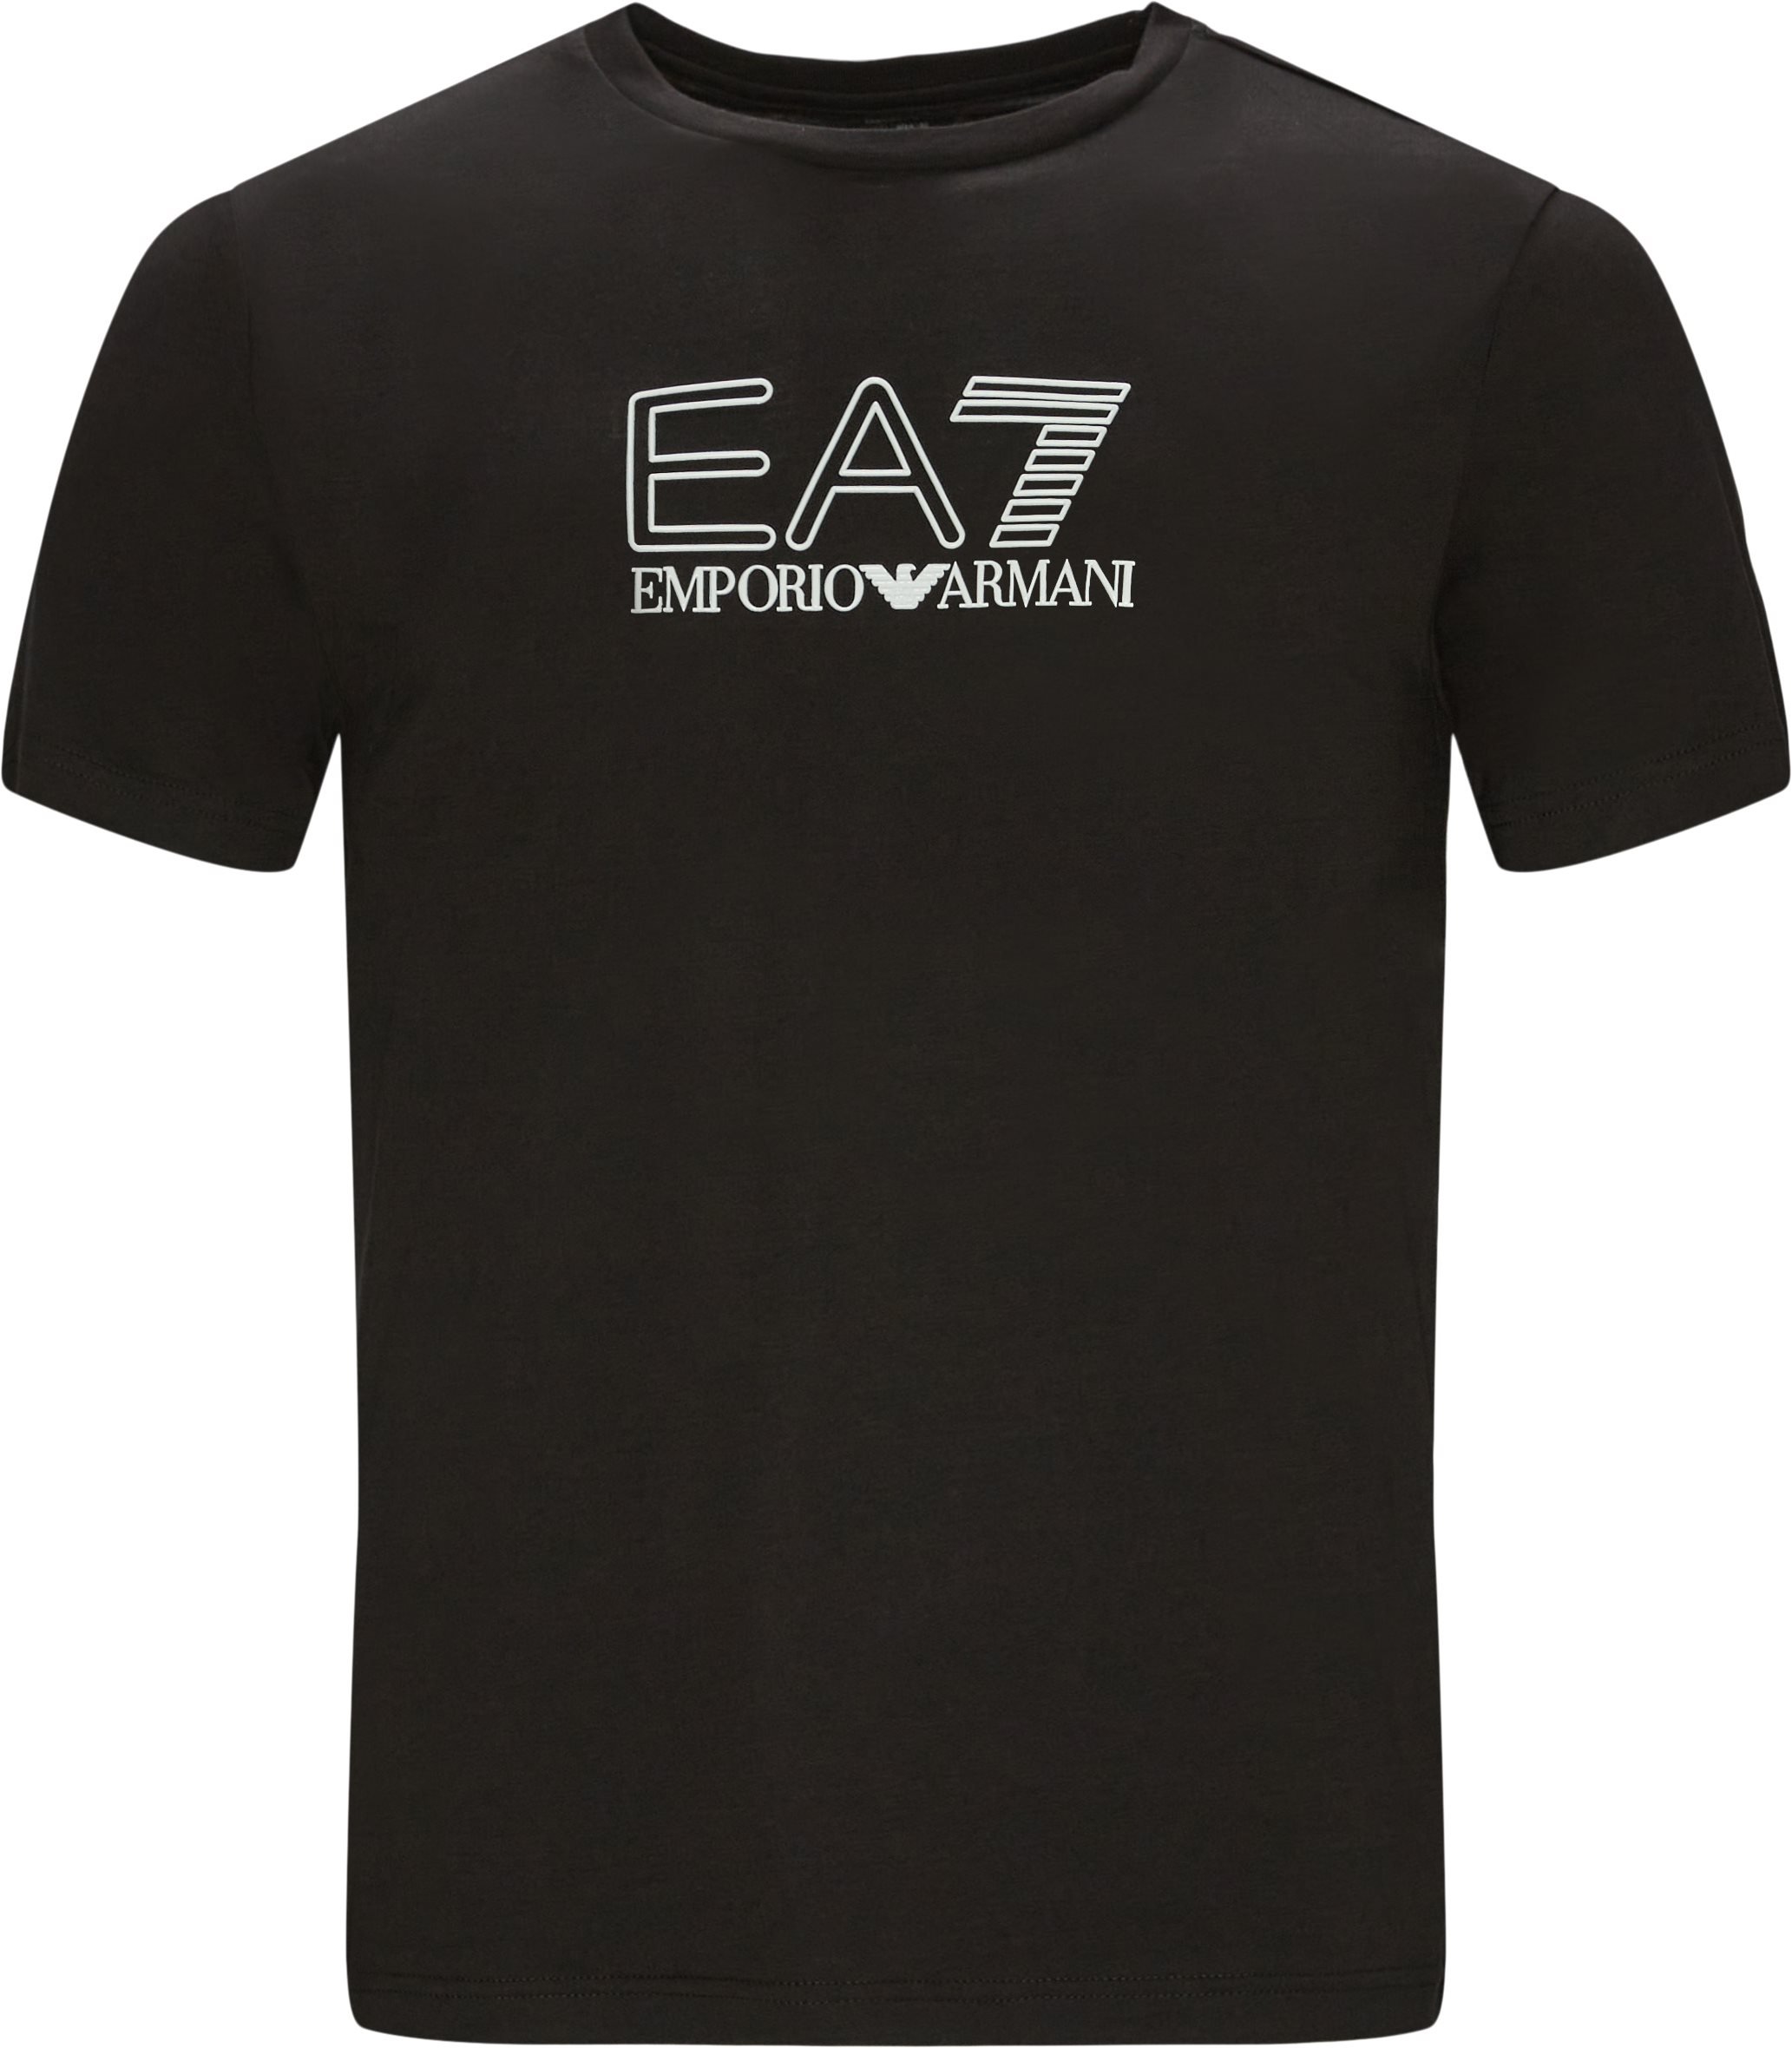 PJM9Z Tee - T-shirts - Regular fit - Black